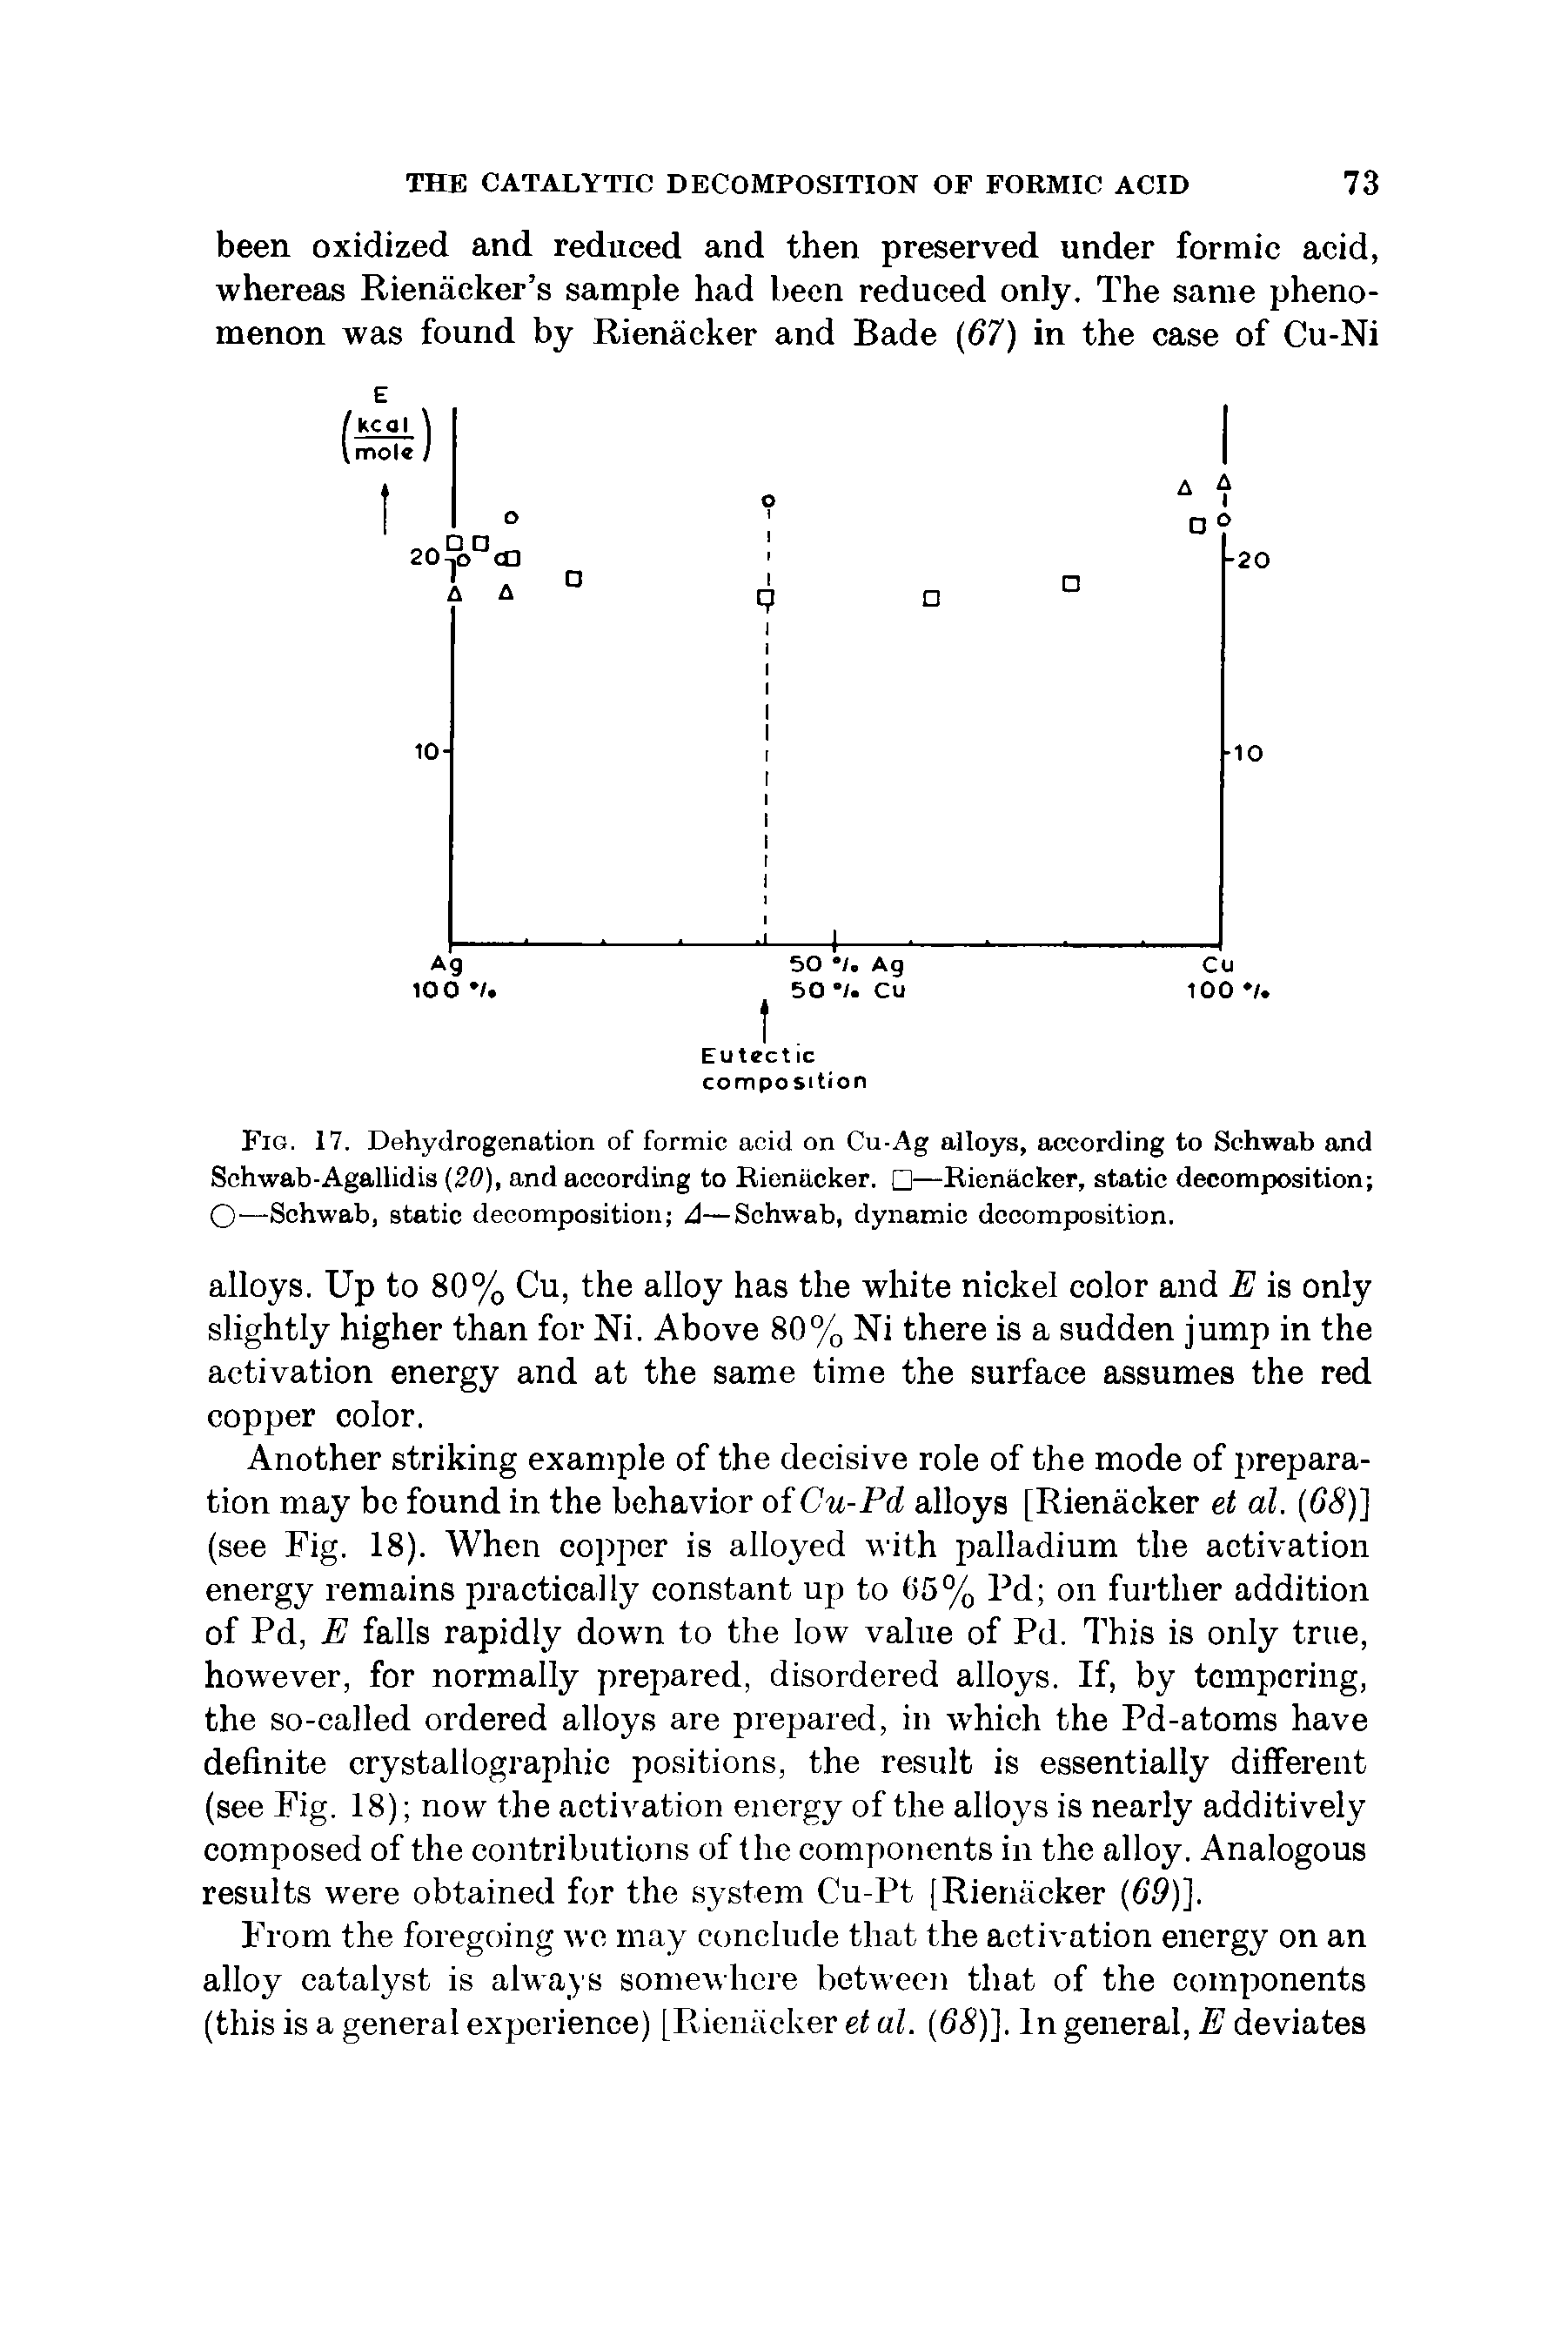 Fig. 17. Dehydrogenation of formic acid on Cu-Ag alloys, according to Schwab and Schwab-Agallidis (20), and according to Rienacker. —Rienacker, static decomposition O—Schwab, static decomposition A—Schwab, dynamic decomposition.